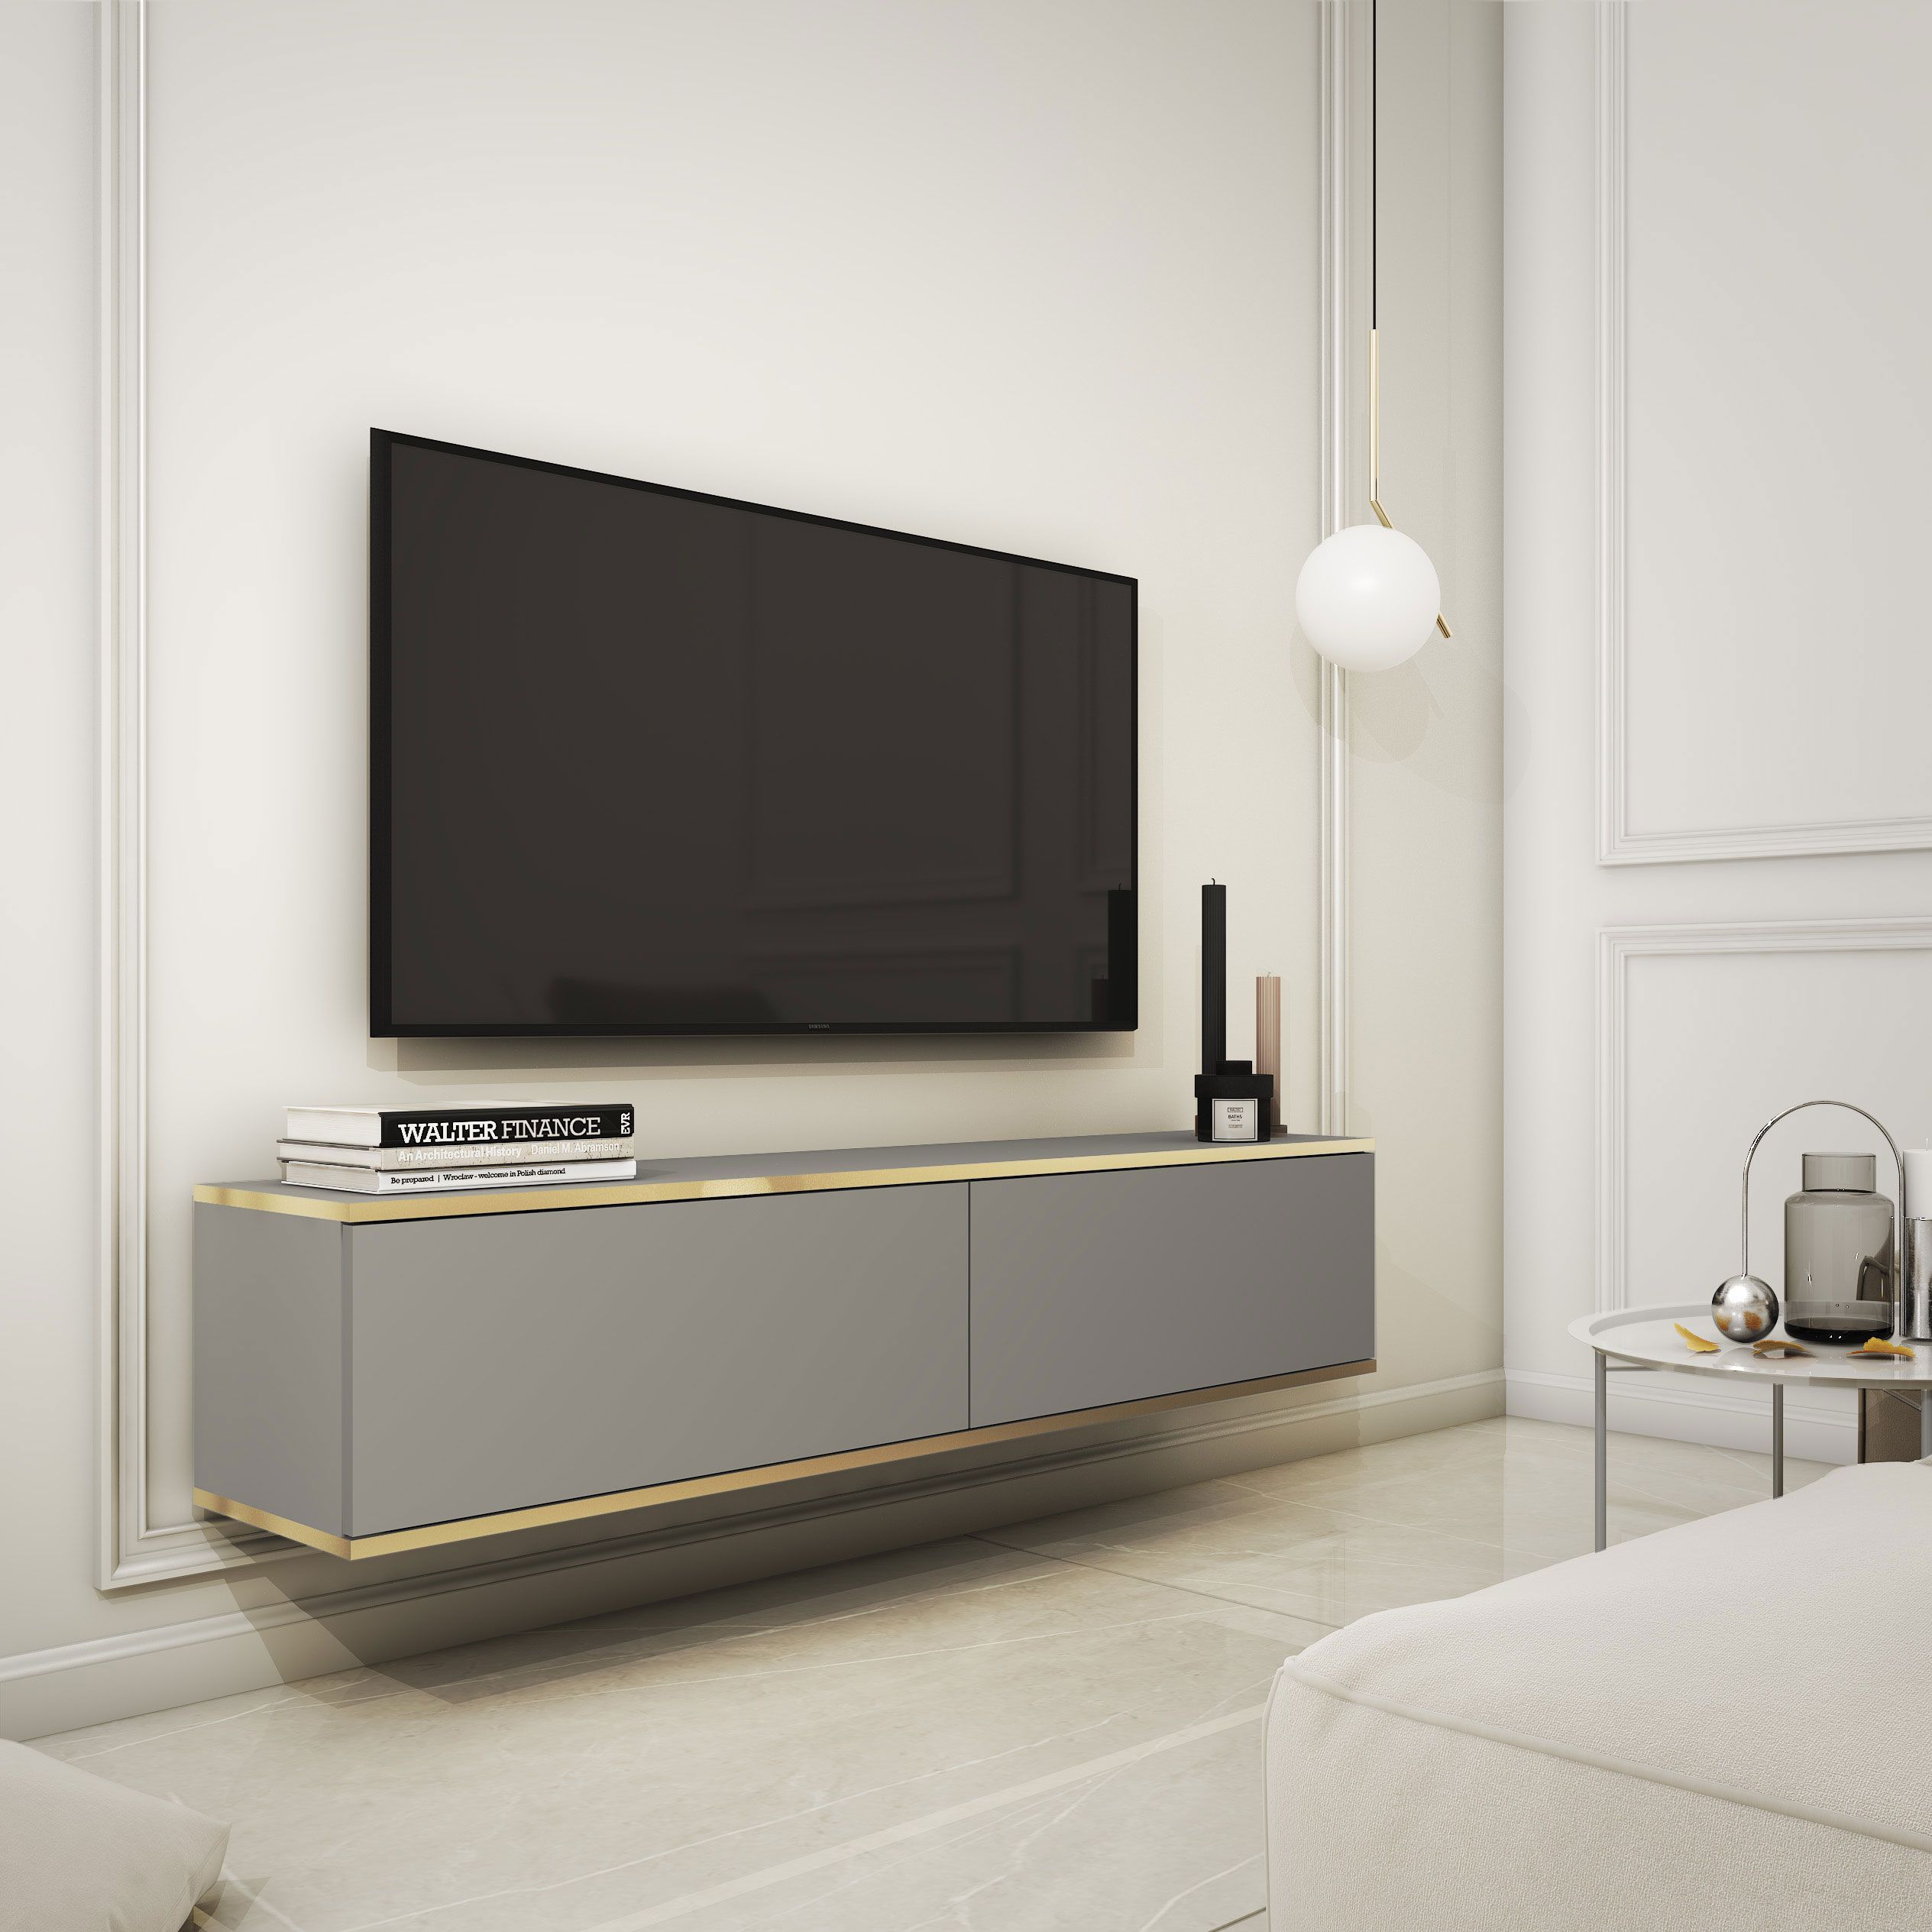 Meuble TV avec deux compartiments basculants Horsham 13, Couleur : Gris - Dimensions : 30 x 135 x 32 cm (H x L x P)